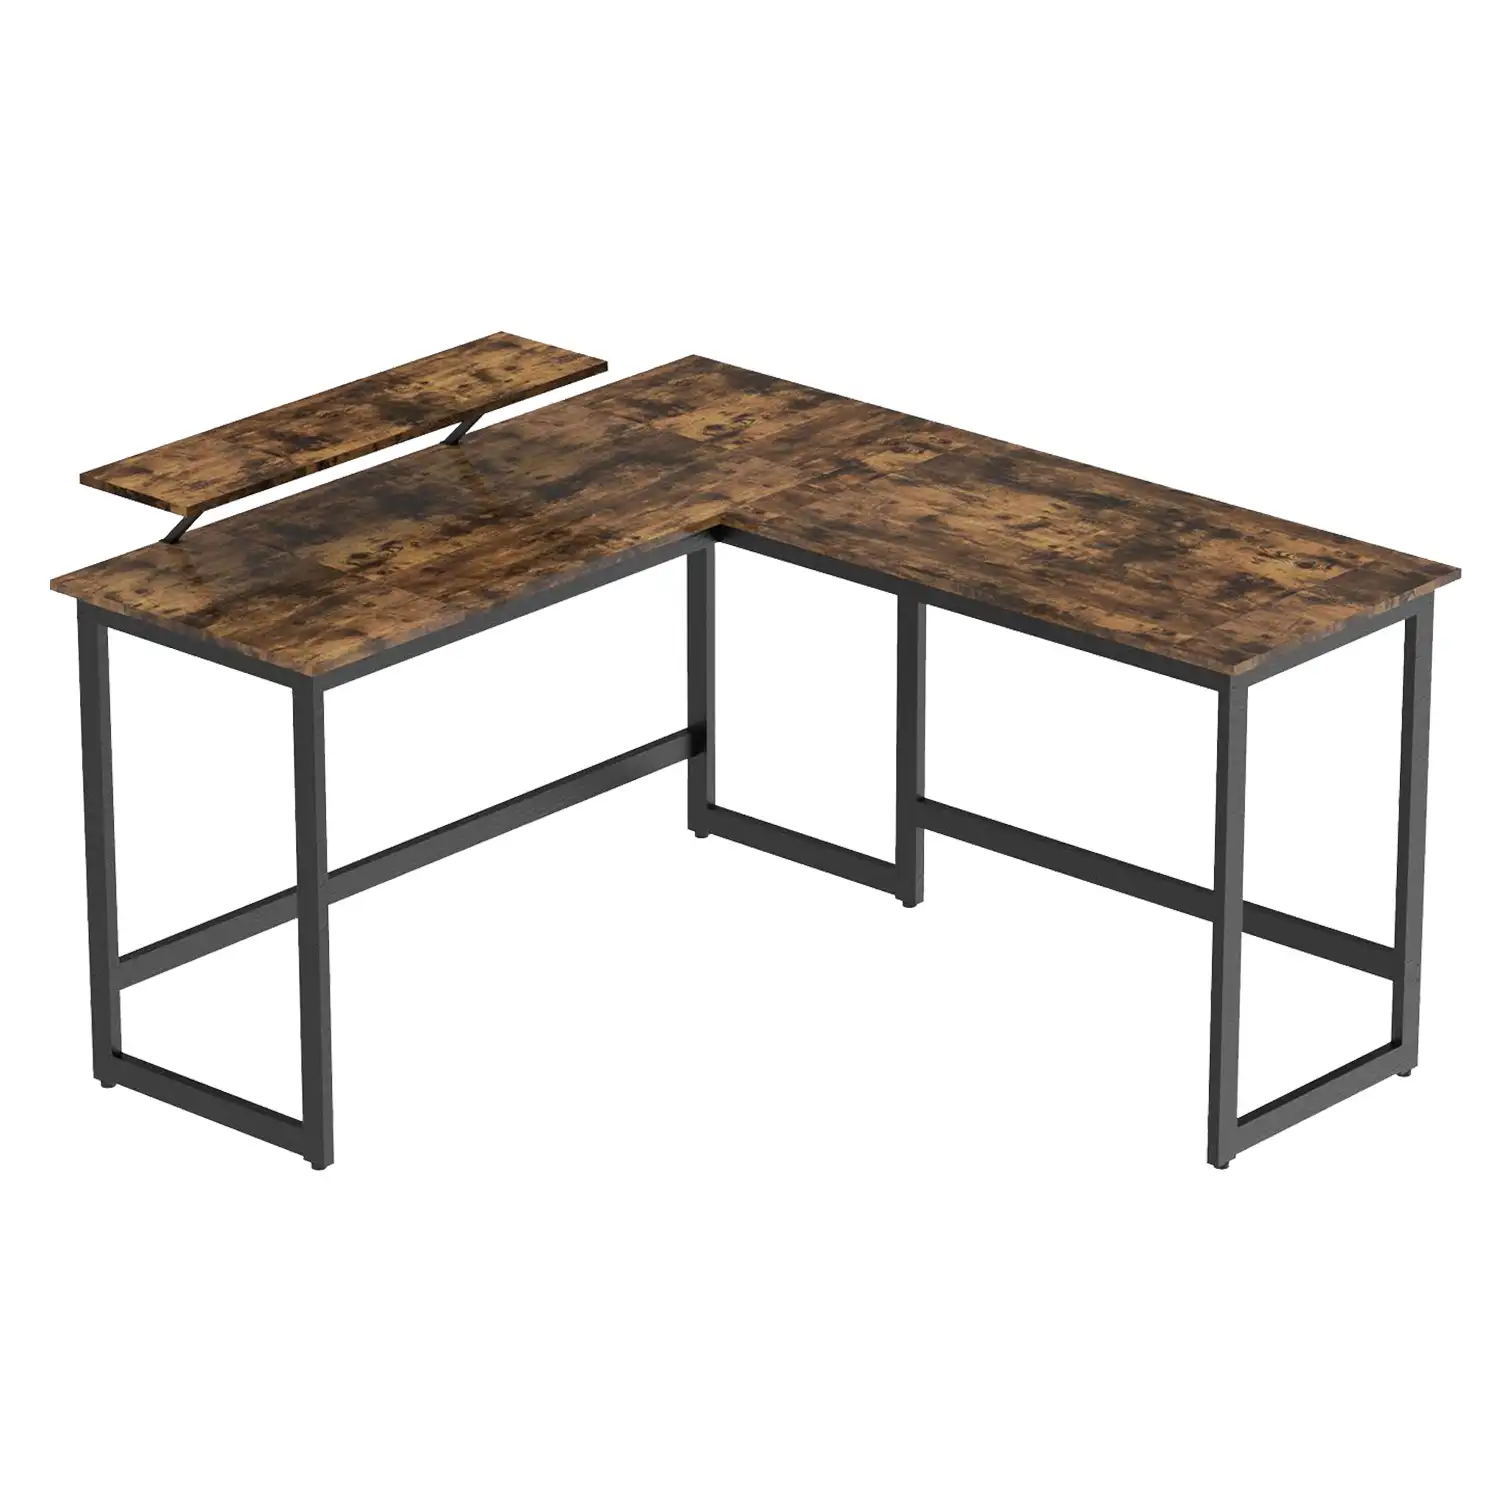 L shaped Home Office Furniture Industrial gaming desk Wood Metal Frame Large Corner PC table Computer Desk